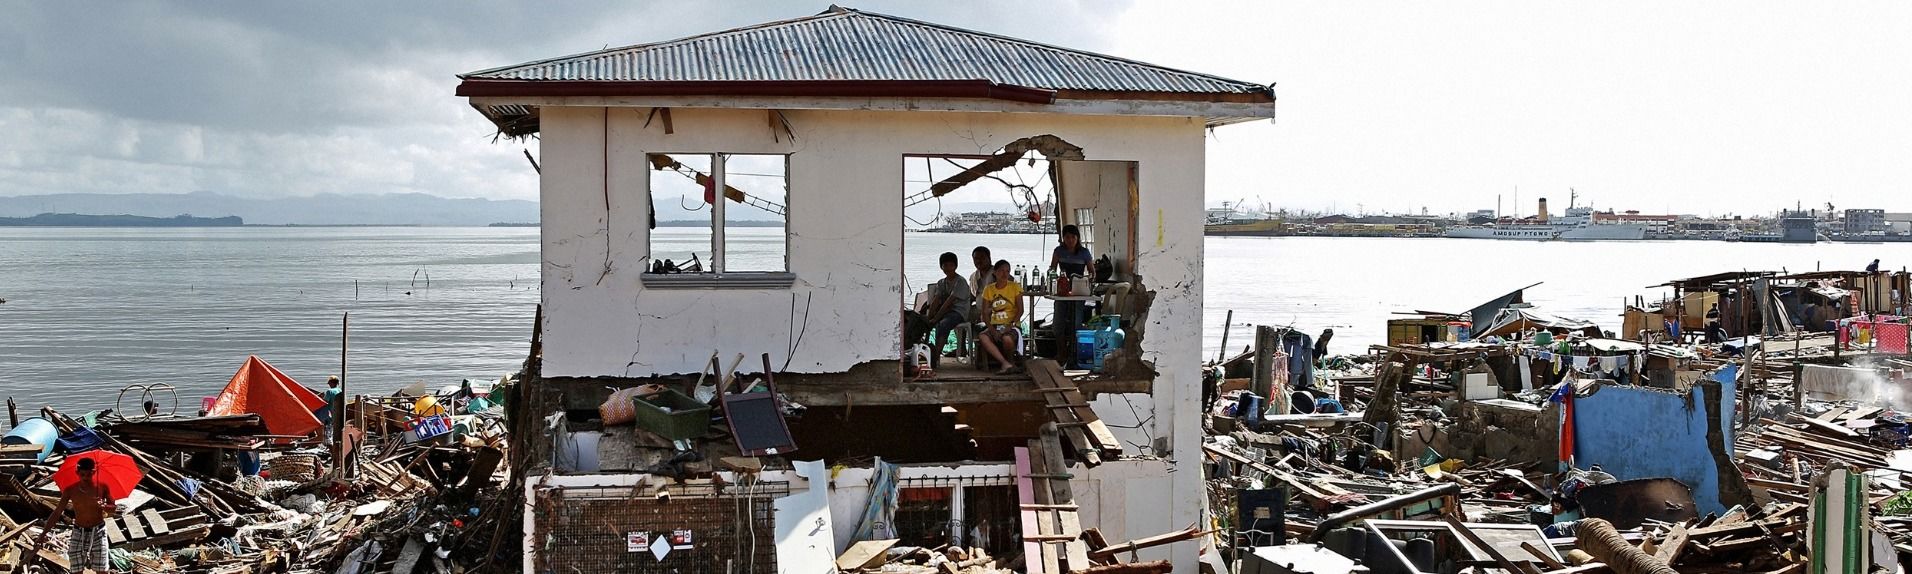 Soforthilfe für Opfer der Taifun-Katastrophe